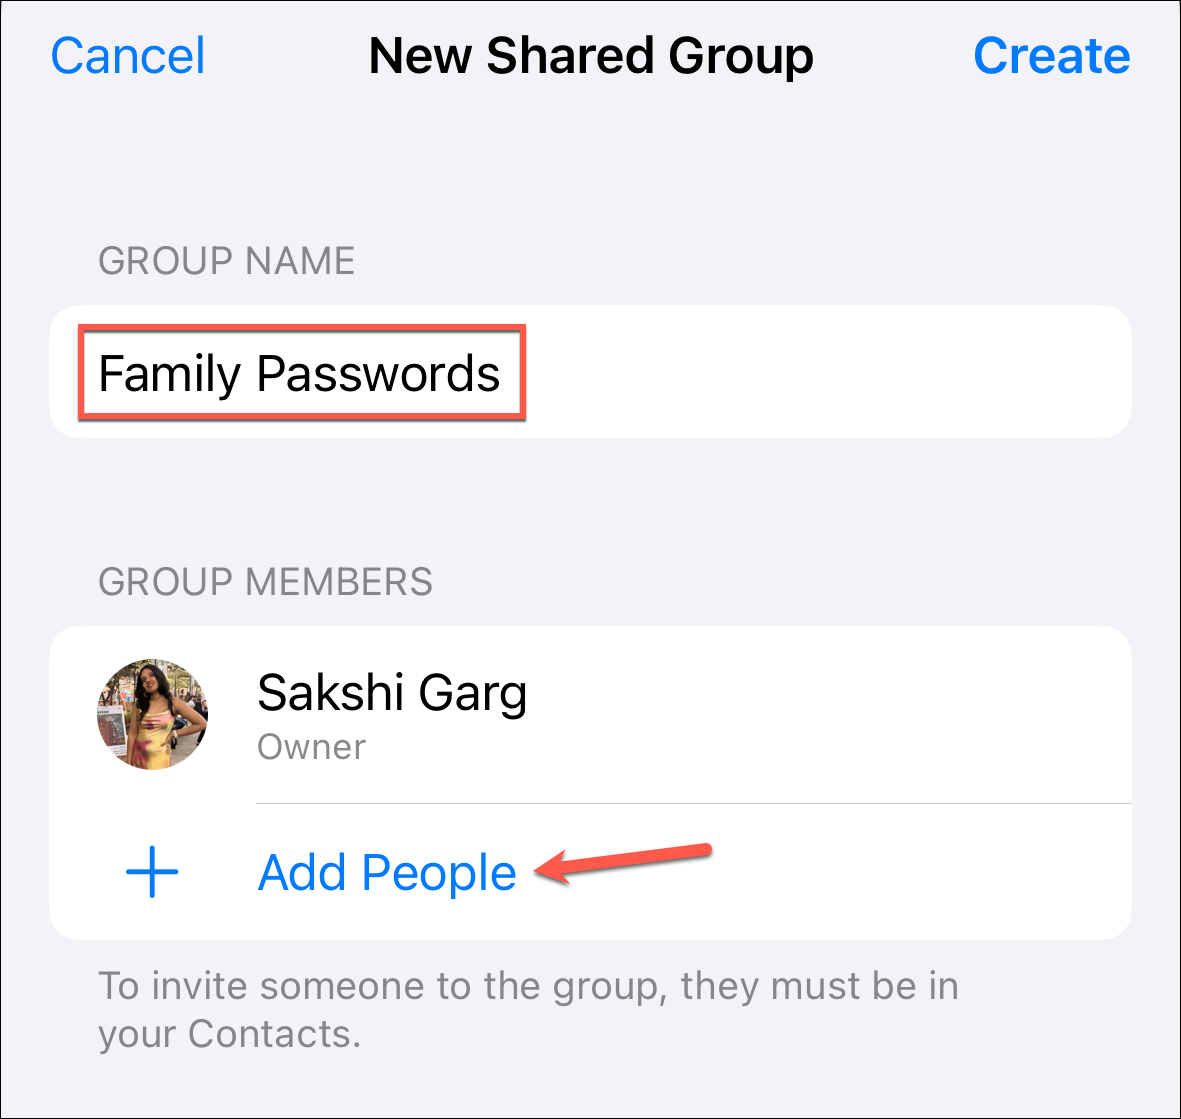 iOS 17 を搭載した iPhone でパスワードとパスキーを共有する方法